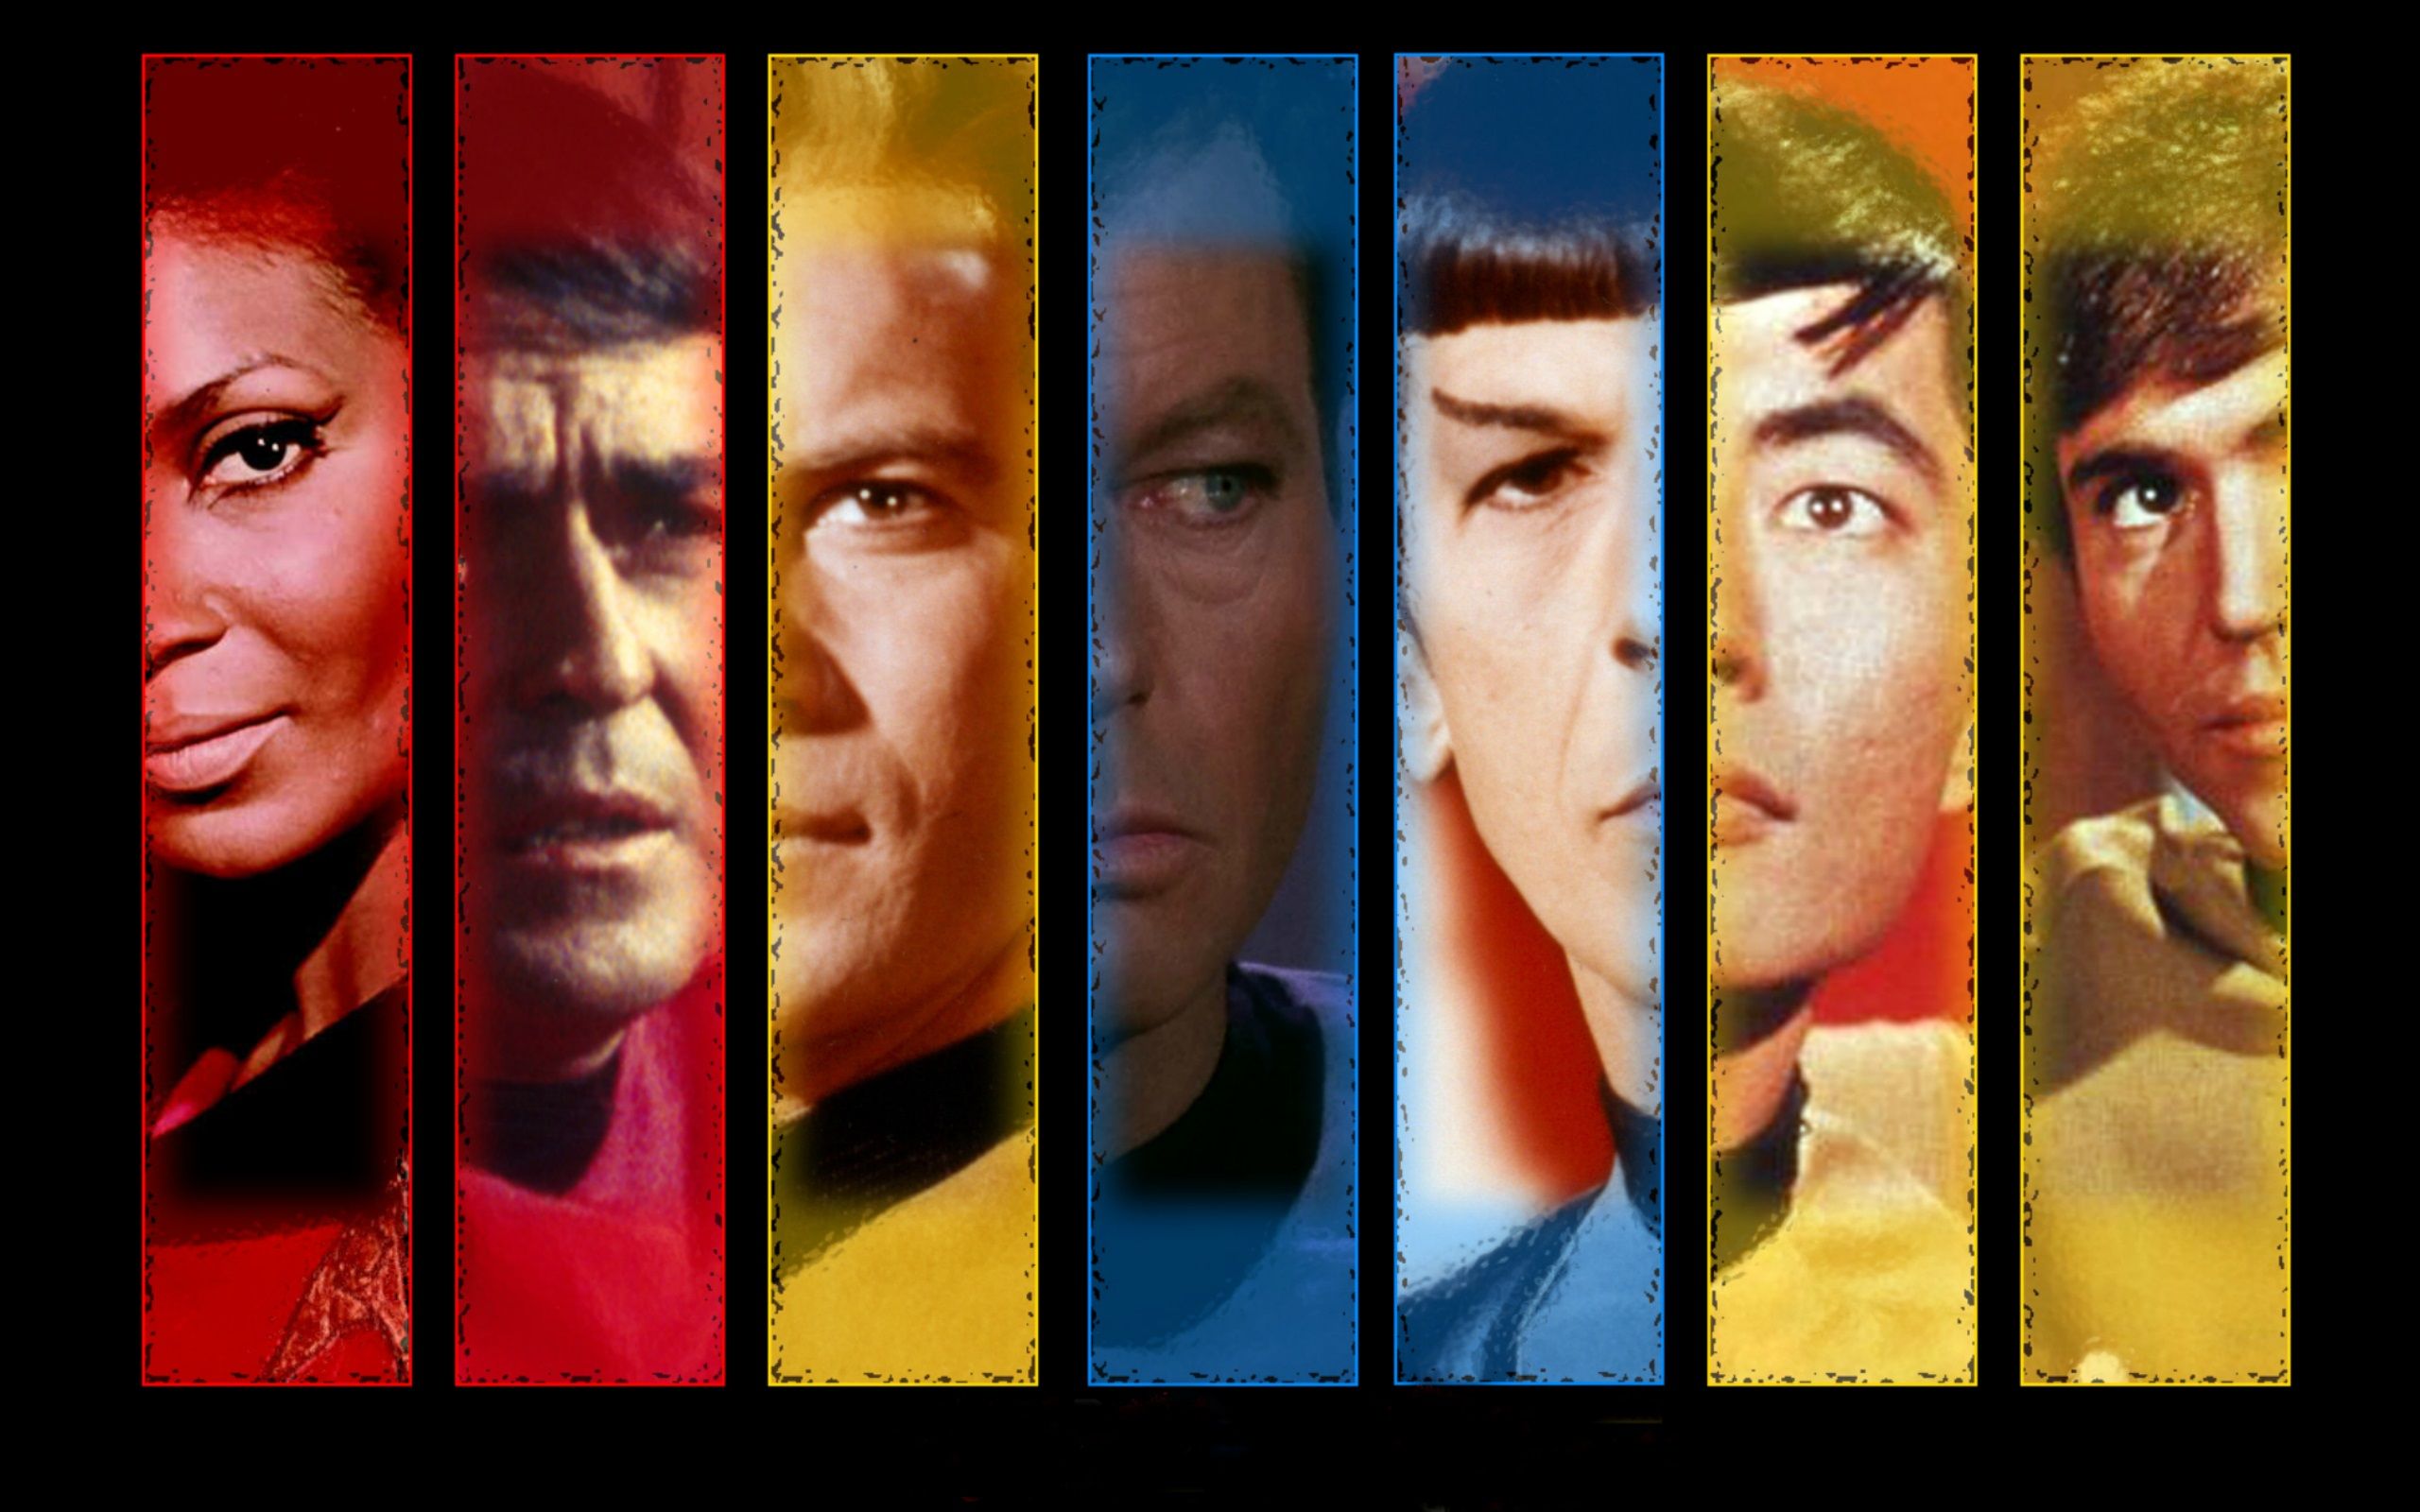 Star Trek: The Original Series Wallpaper, Picture, Image